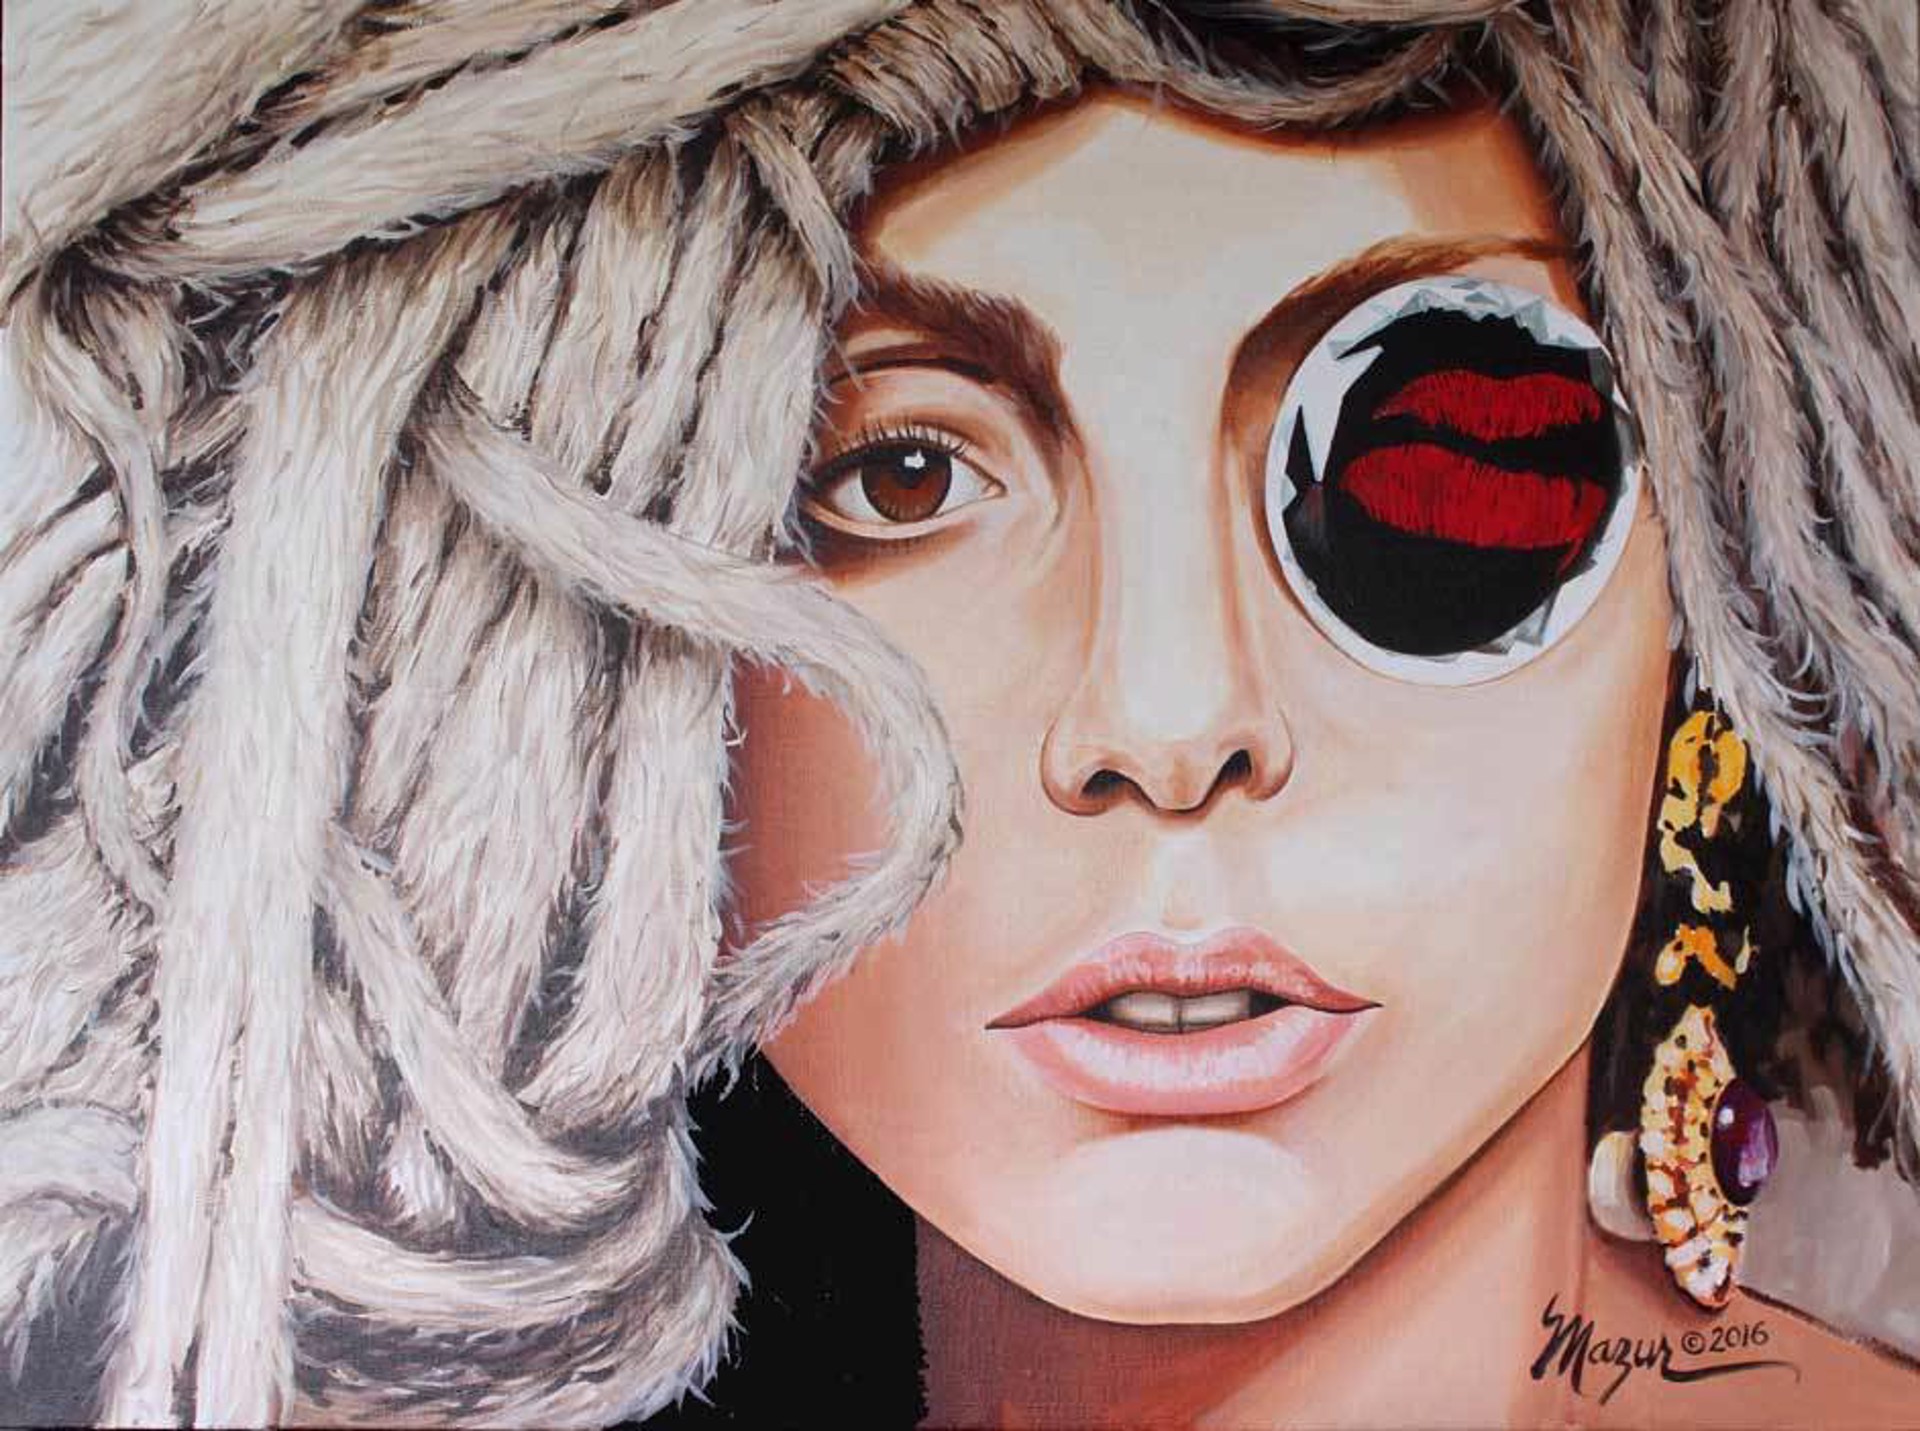 Lady Gaga "In Dreads" by Ruby Mazur